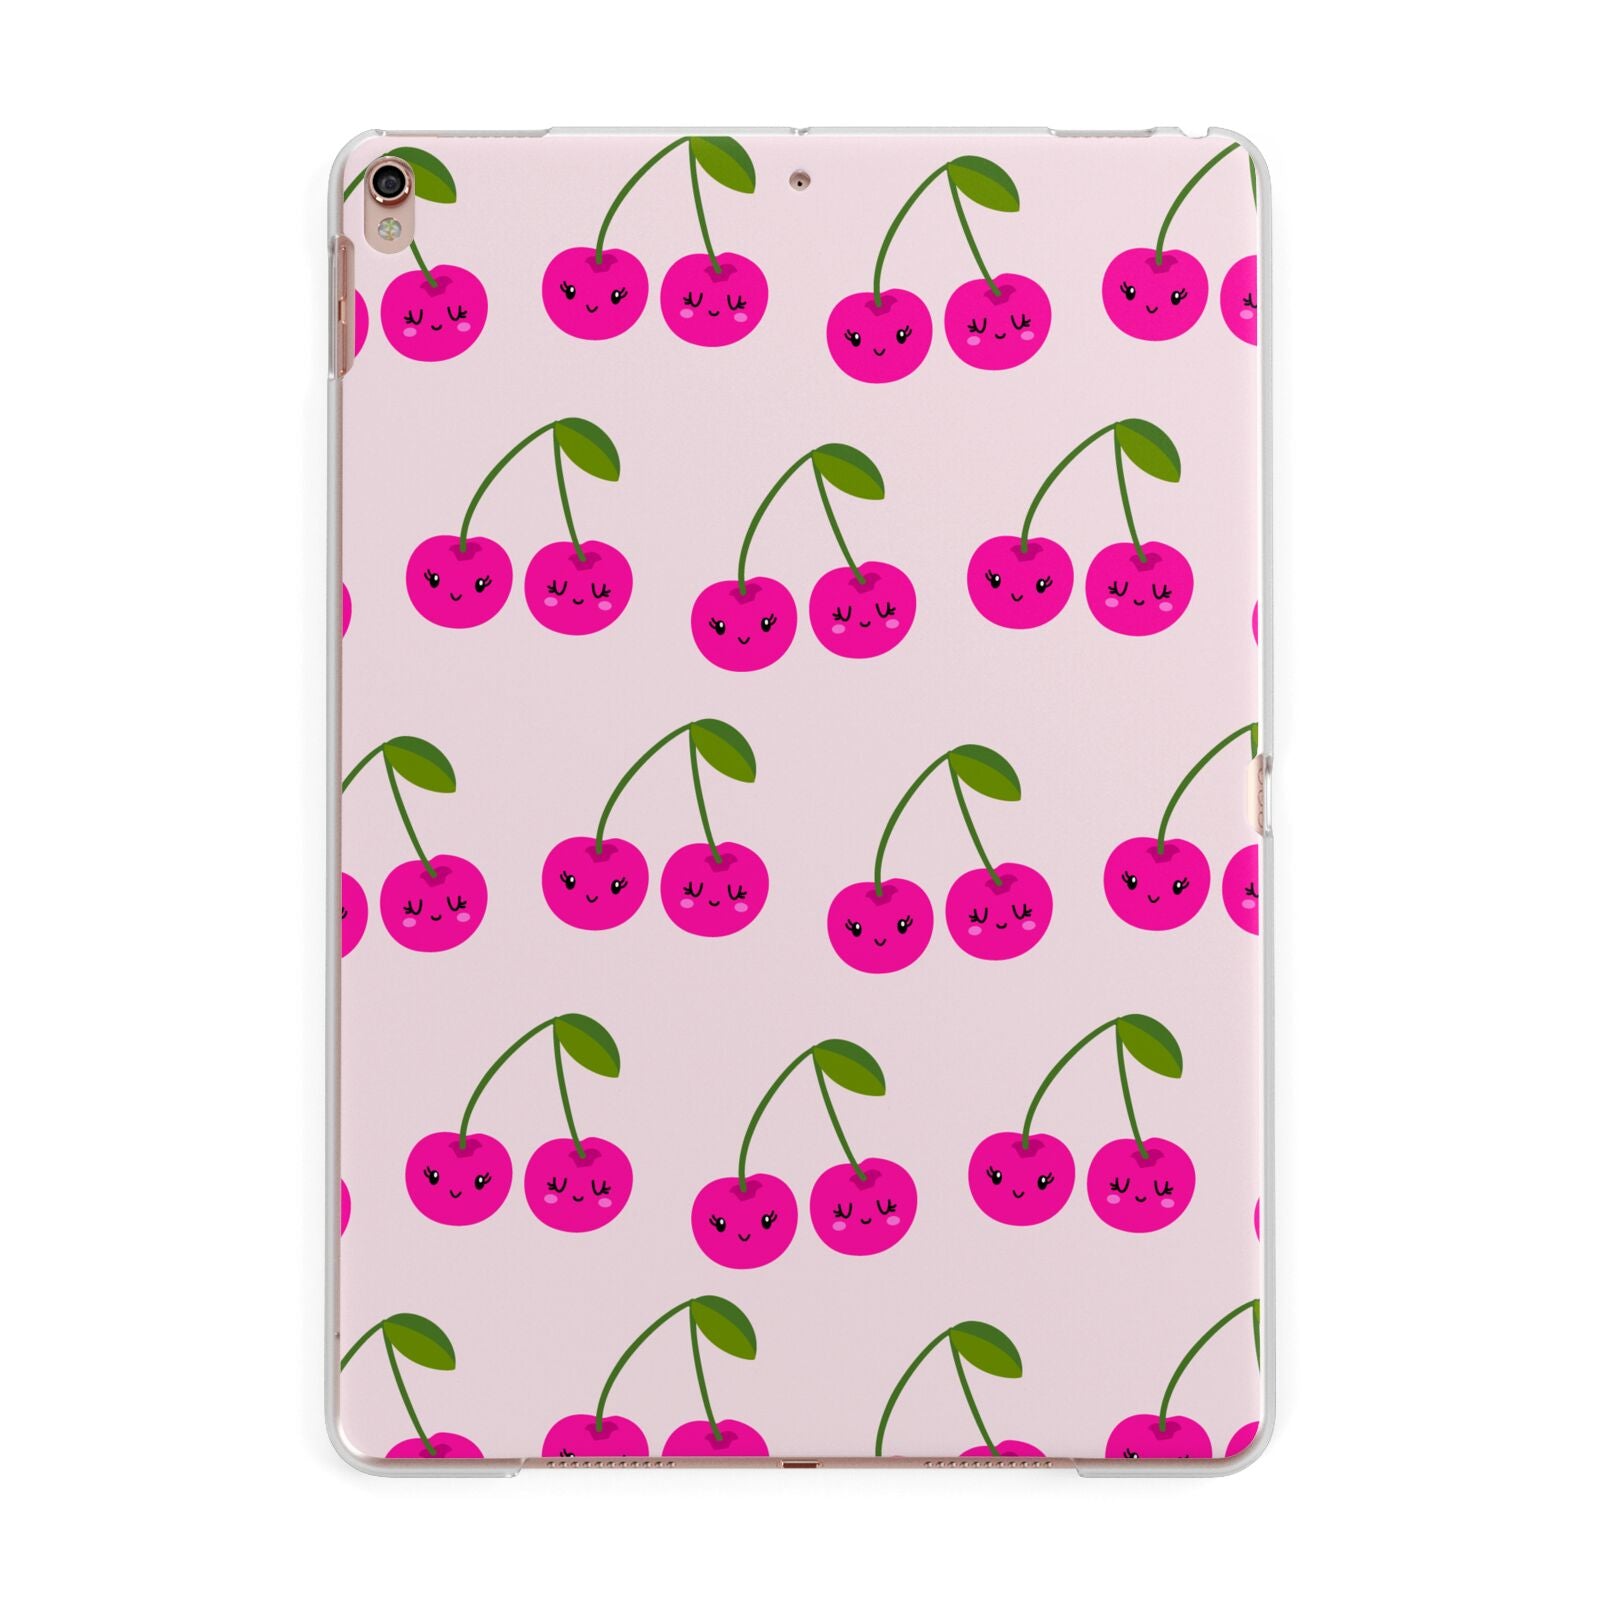 Happy Cherry iPad case